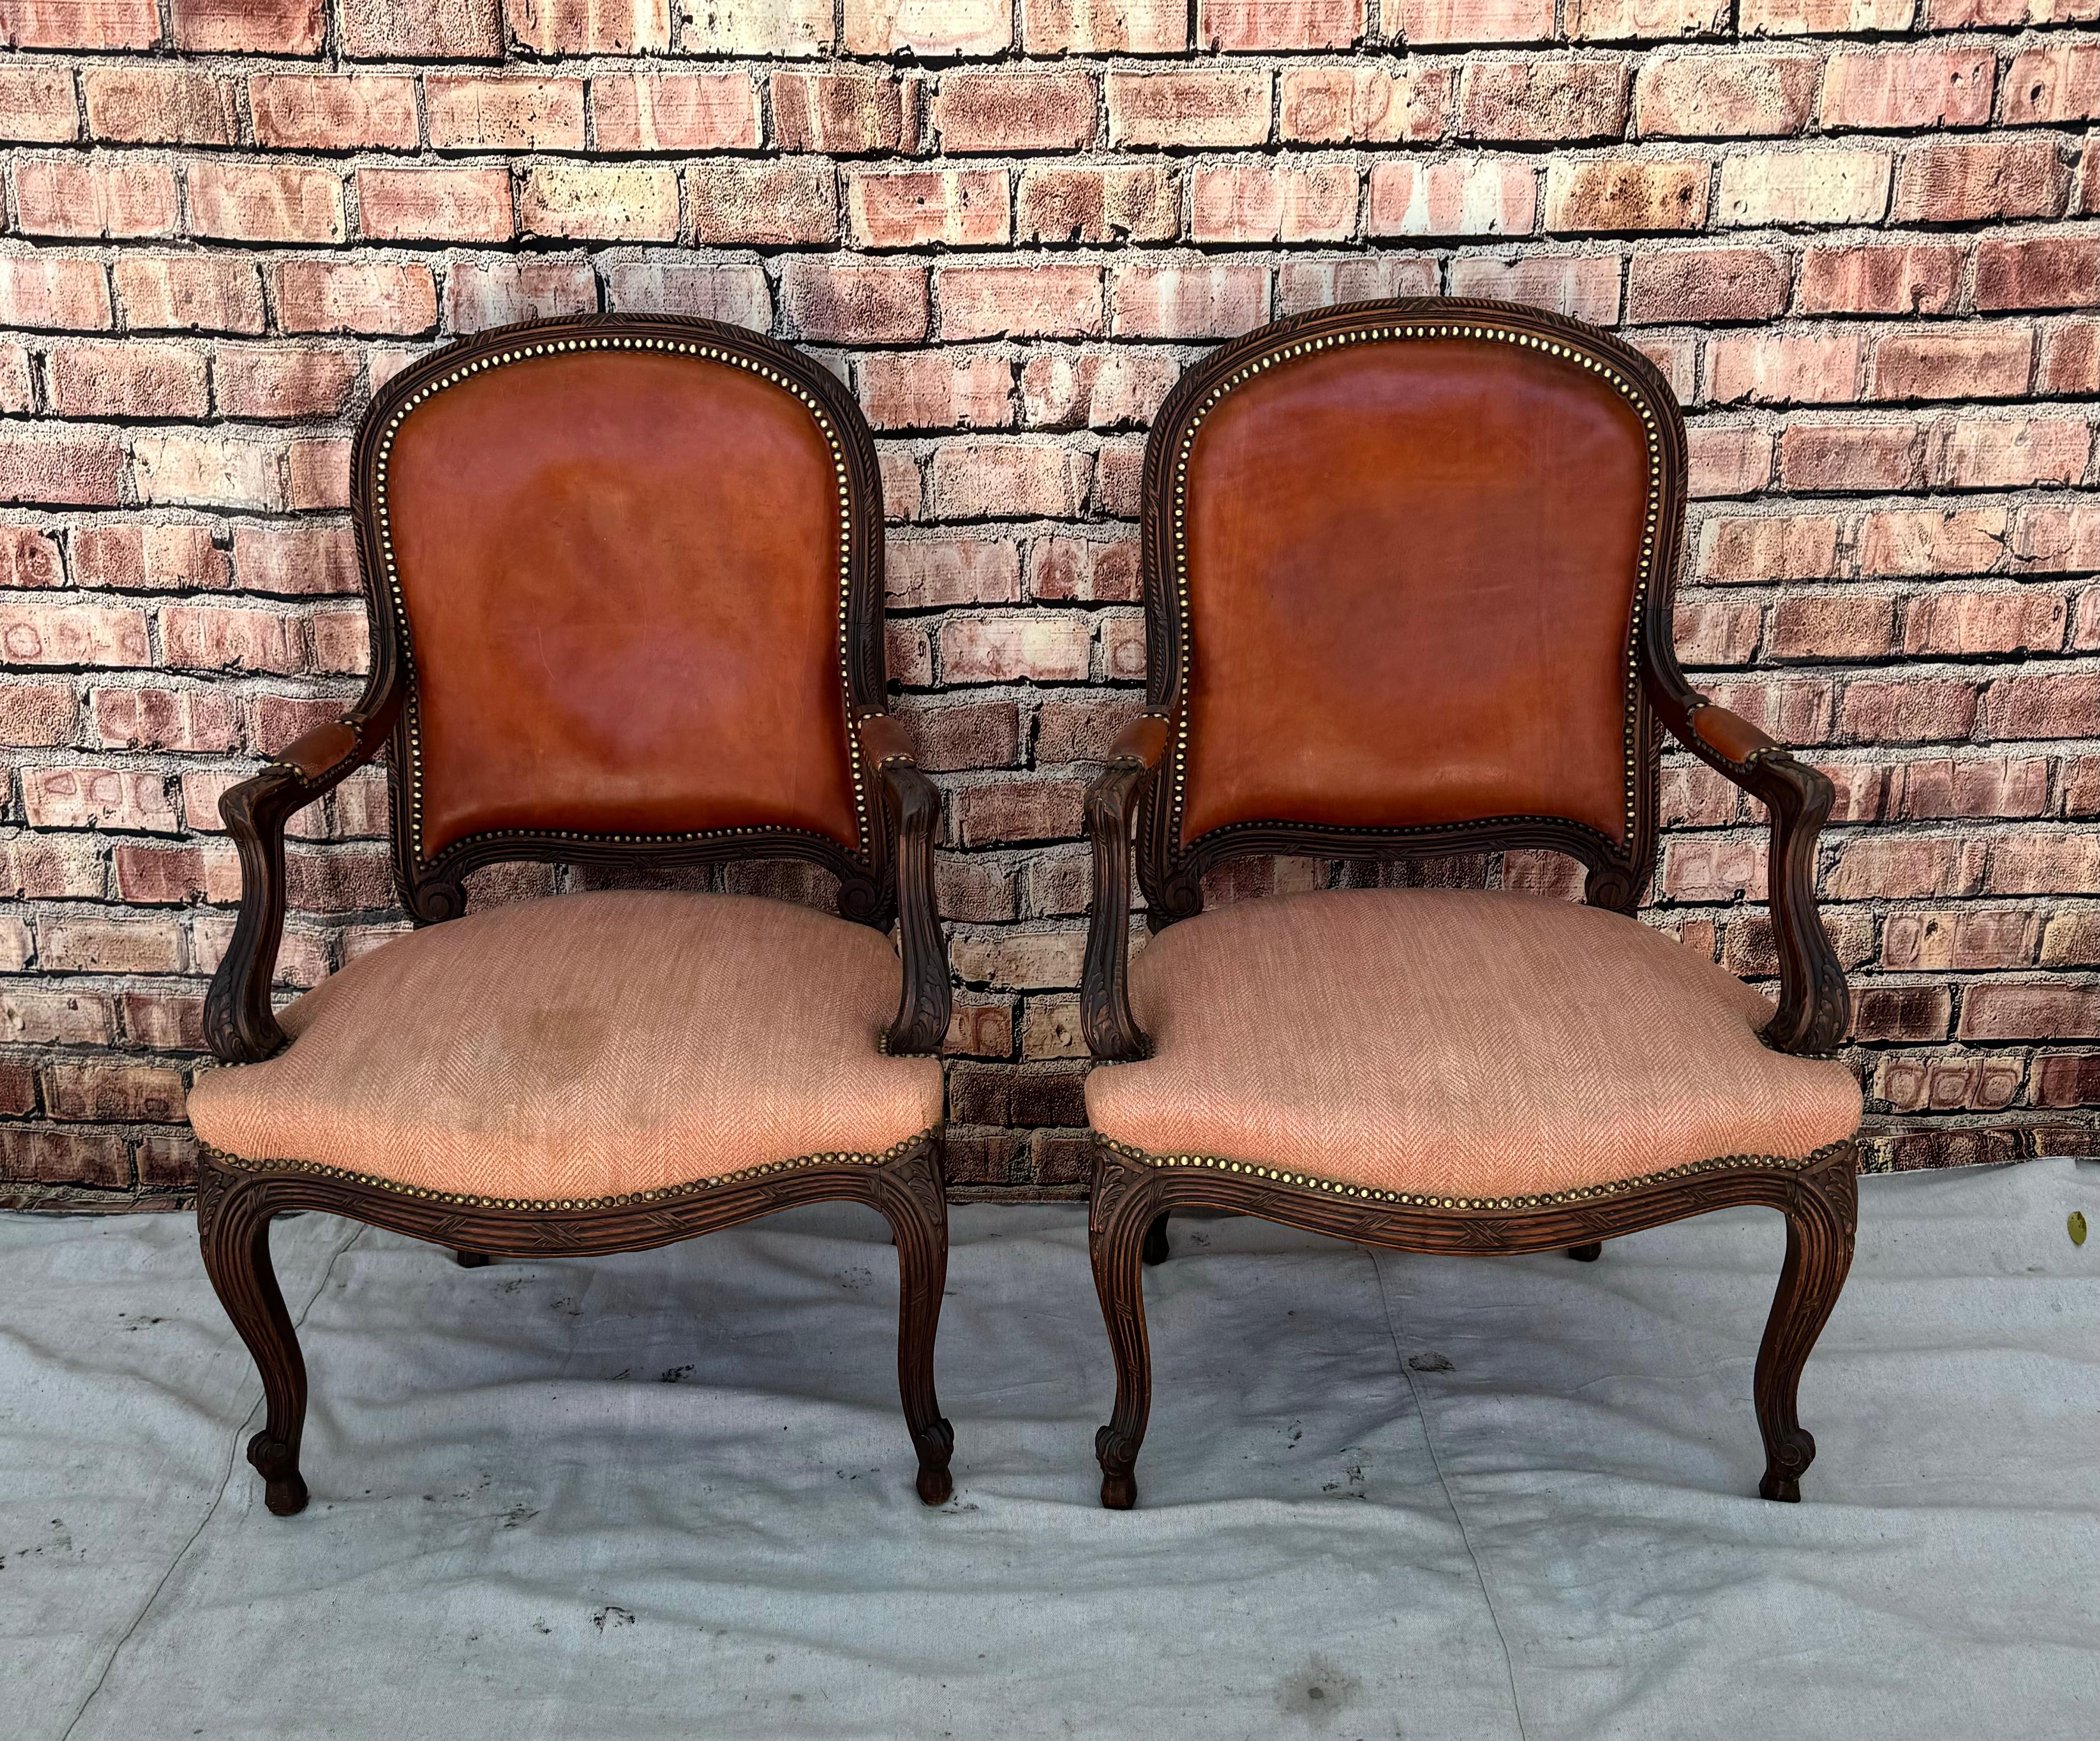 Paire de fauteuils Fauteuil de style Louis XV. Les chaises sont dotées d'un cadre en noyer sculpté et façonné, d'une jupe serpentine et de pieds cabriole sculptés. Les chaises sont également dotées de dossiers et d'accoudoirs en cuir rouge plaqué et